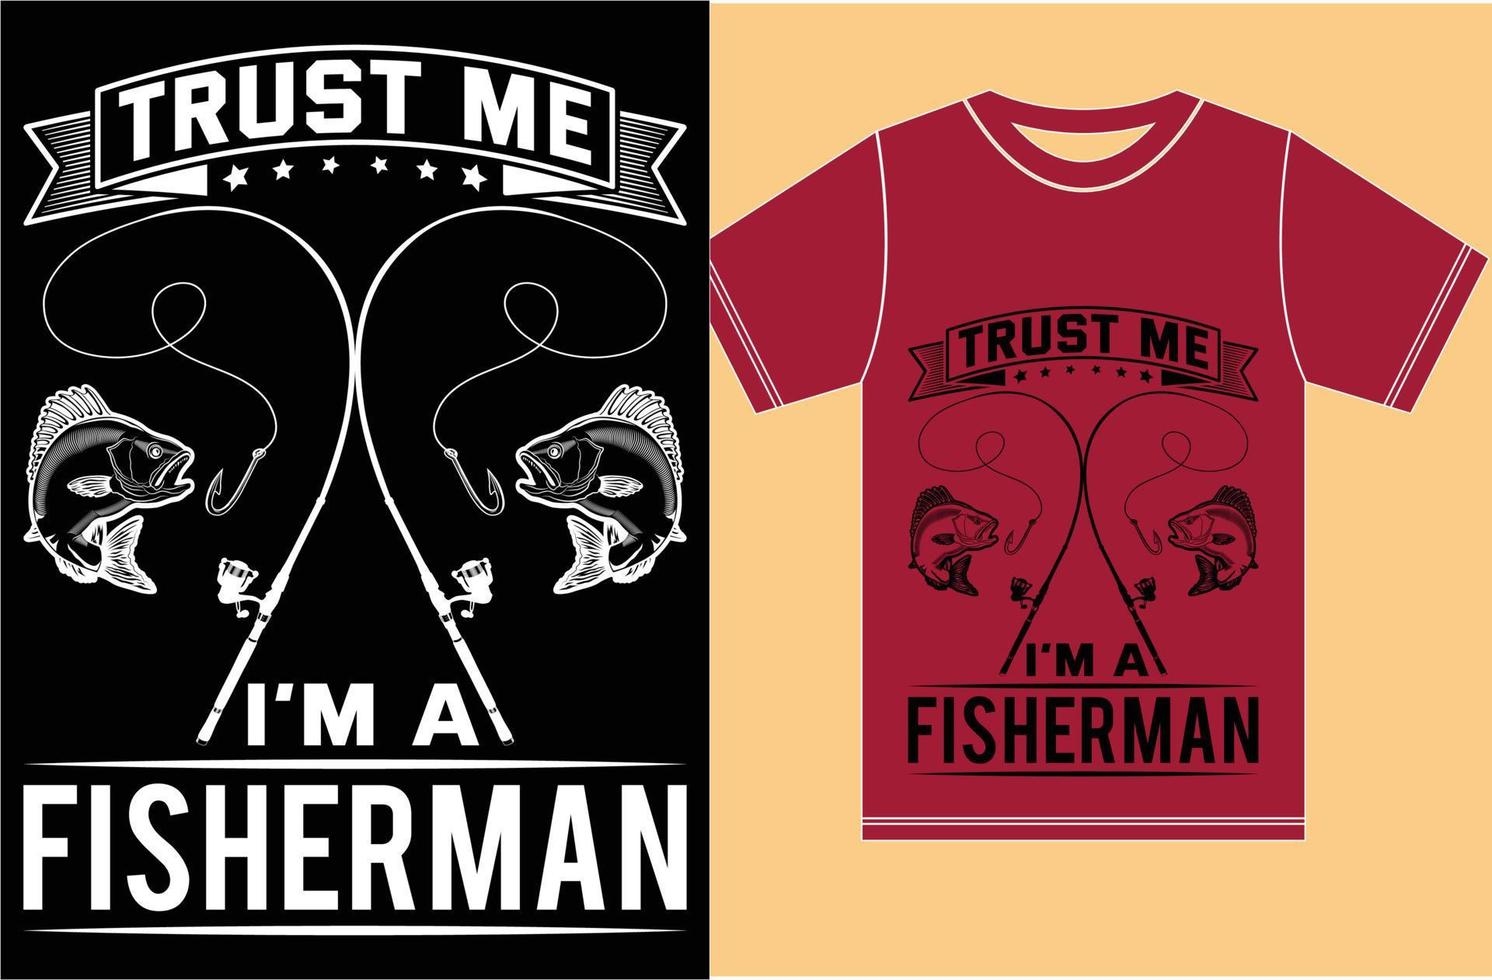 créeme, soy un pescador. Diseño de camiseta para amantes de la pesca. vector